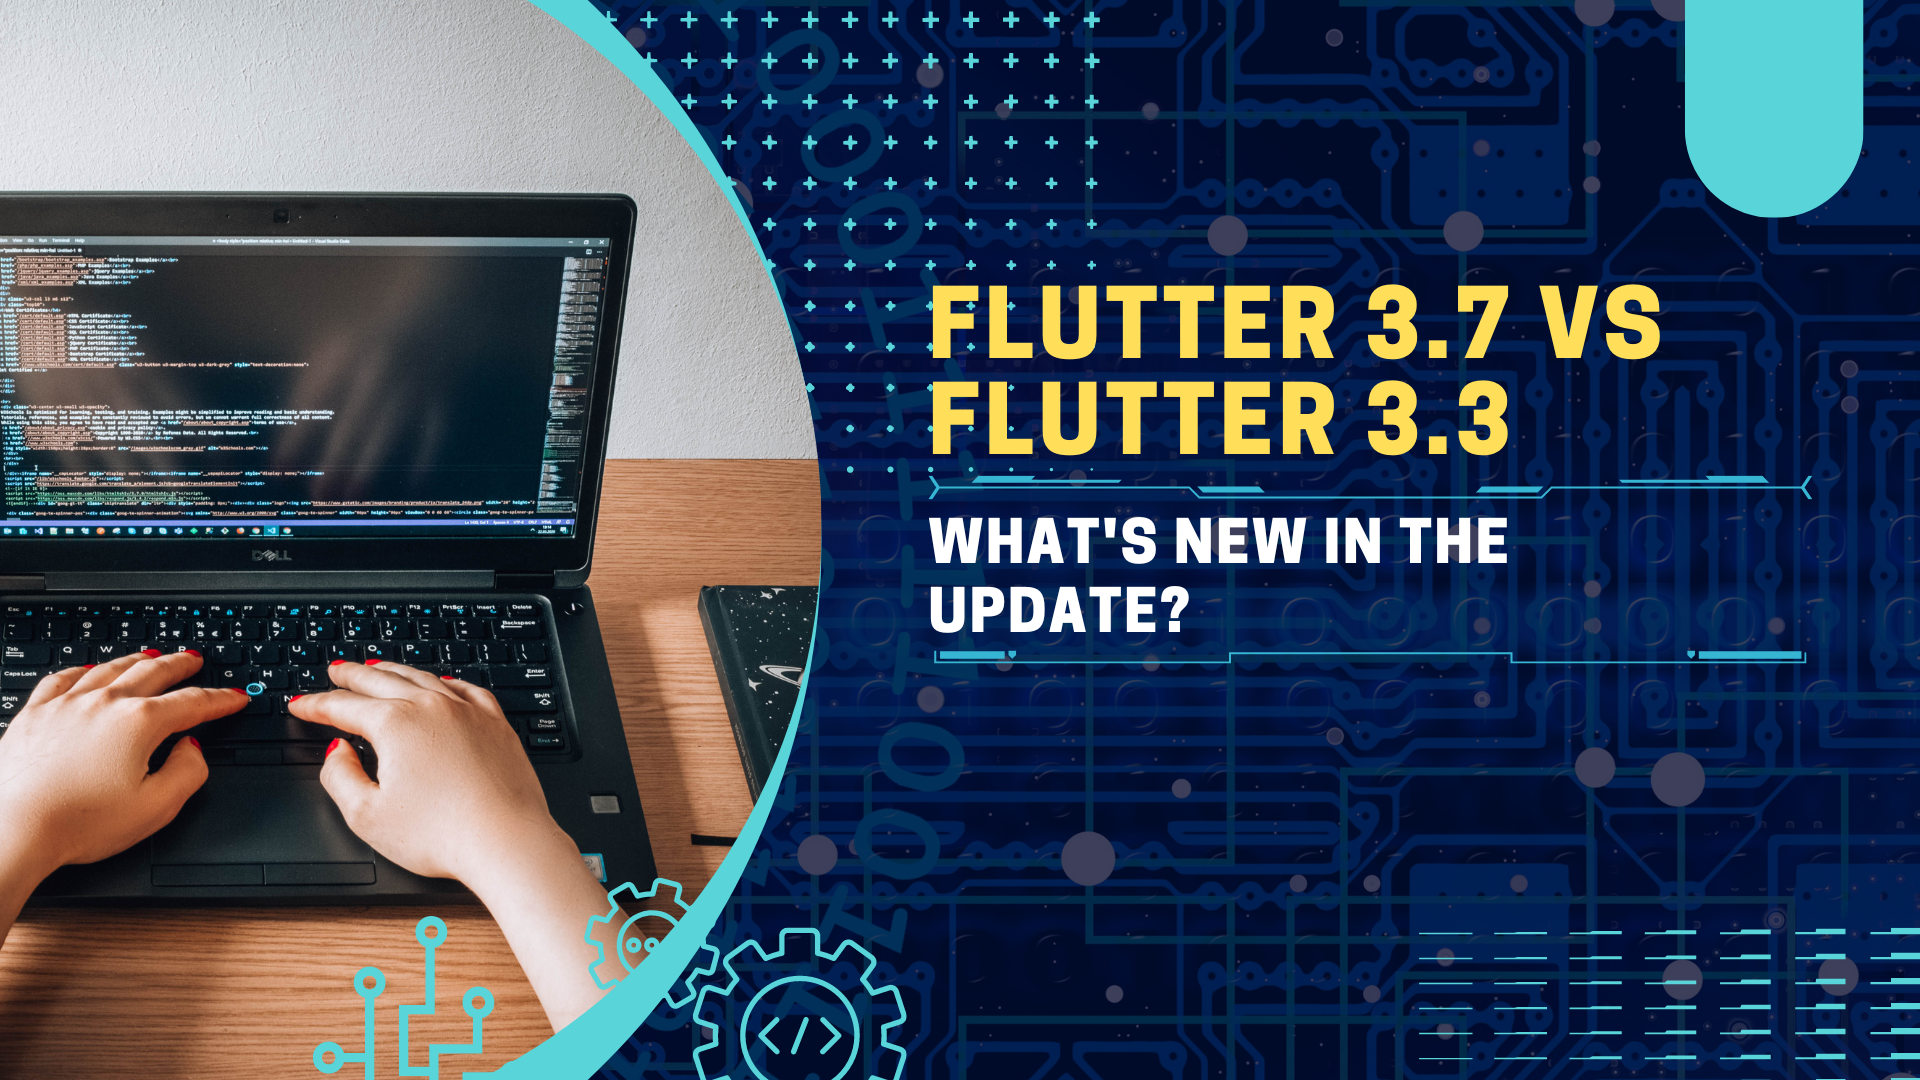 Flutter 3.7 vs Flutter 3.3